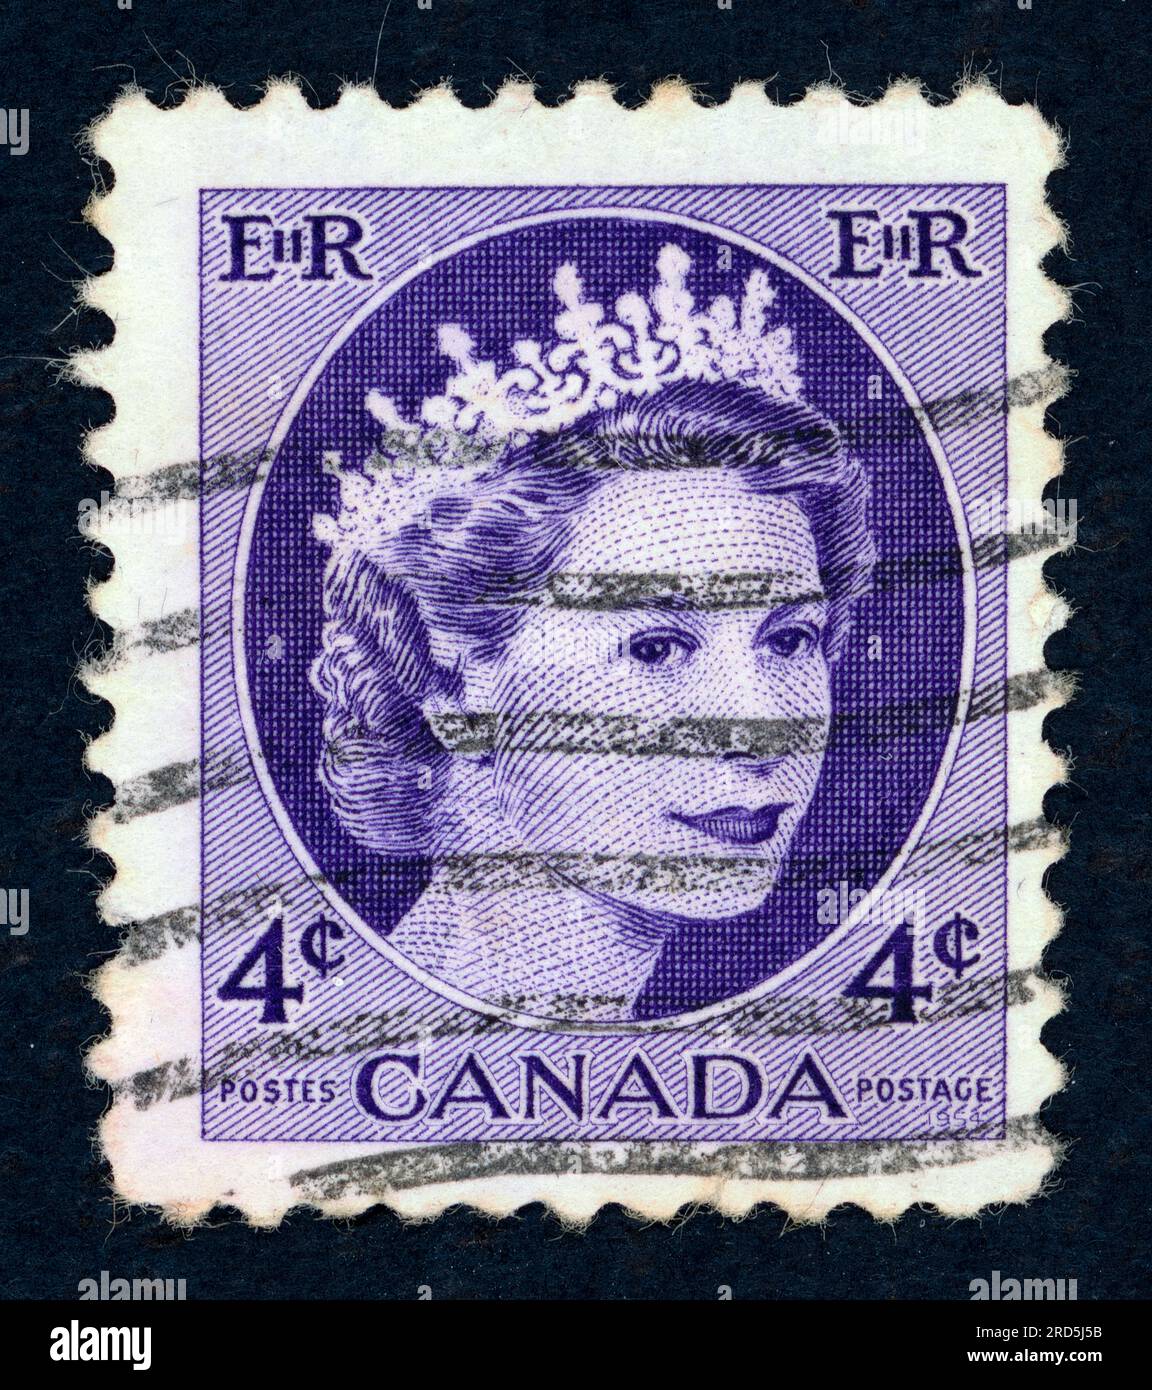 Reine Elizabeth II Timbre-poste émis au Canada dans les années 1950 Banque D'Images